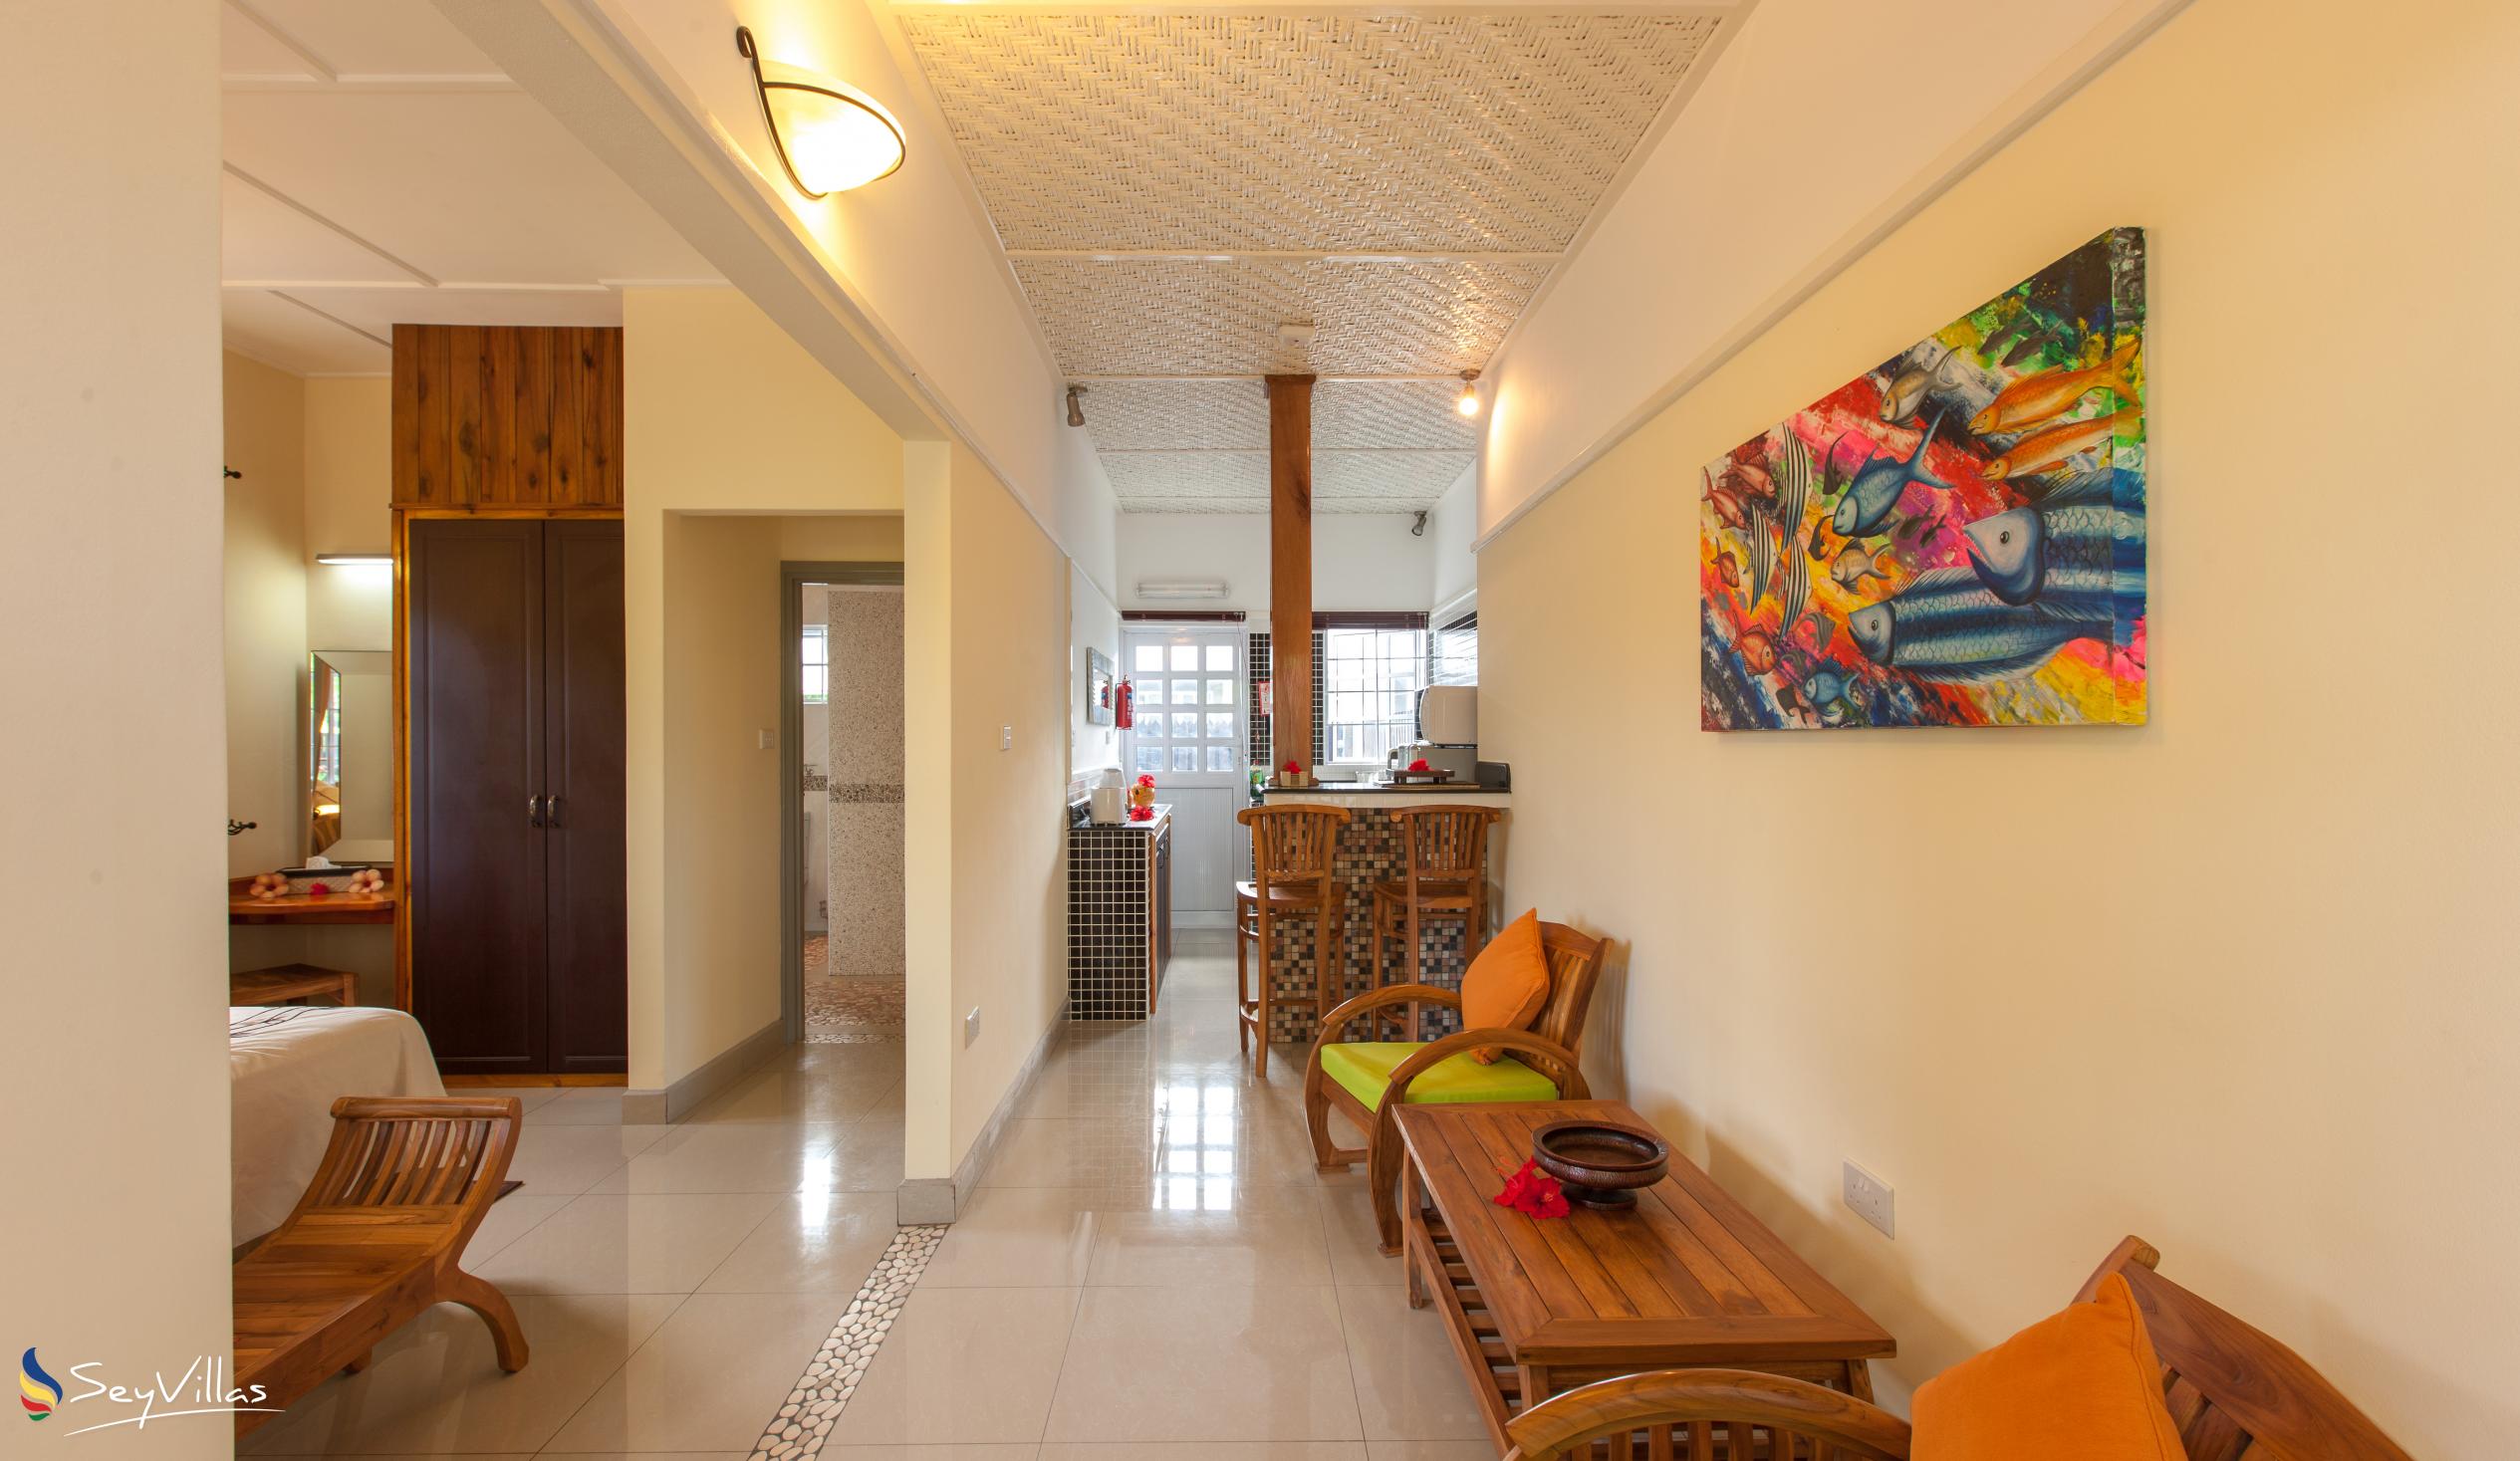 Foto 12: Maison Charme De L'ile - Garden View Apartment - La Digue (Seychellen)